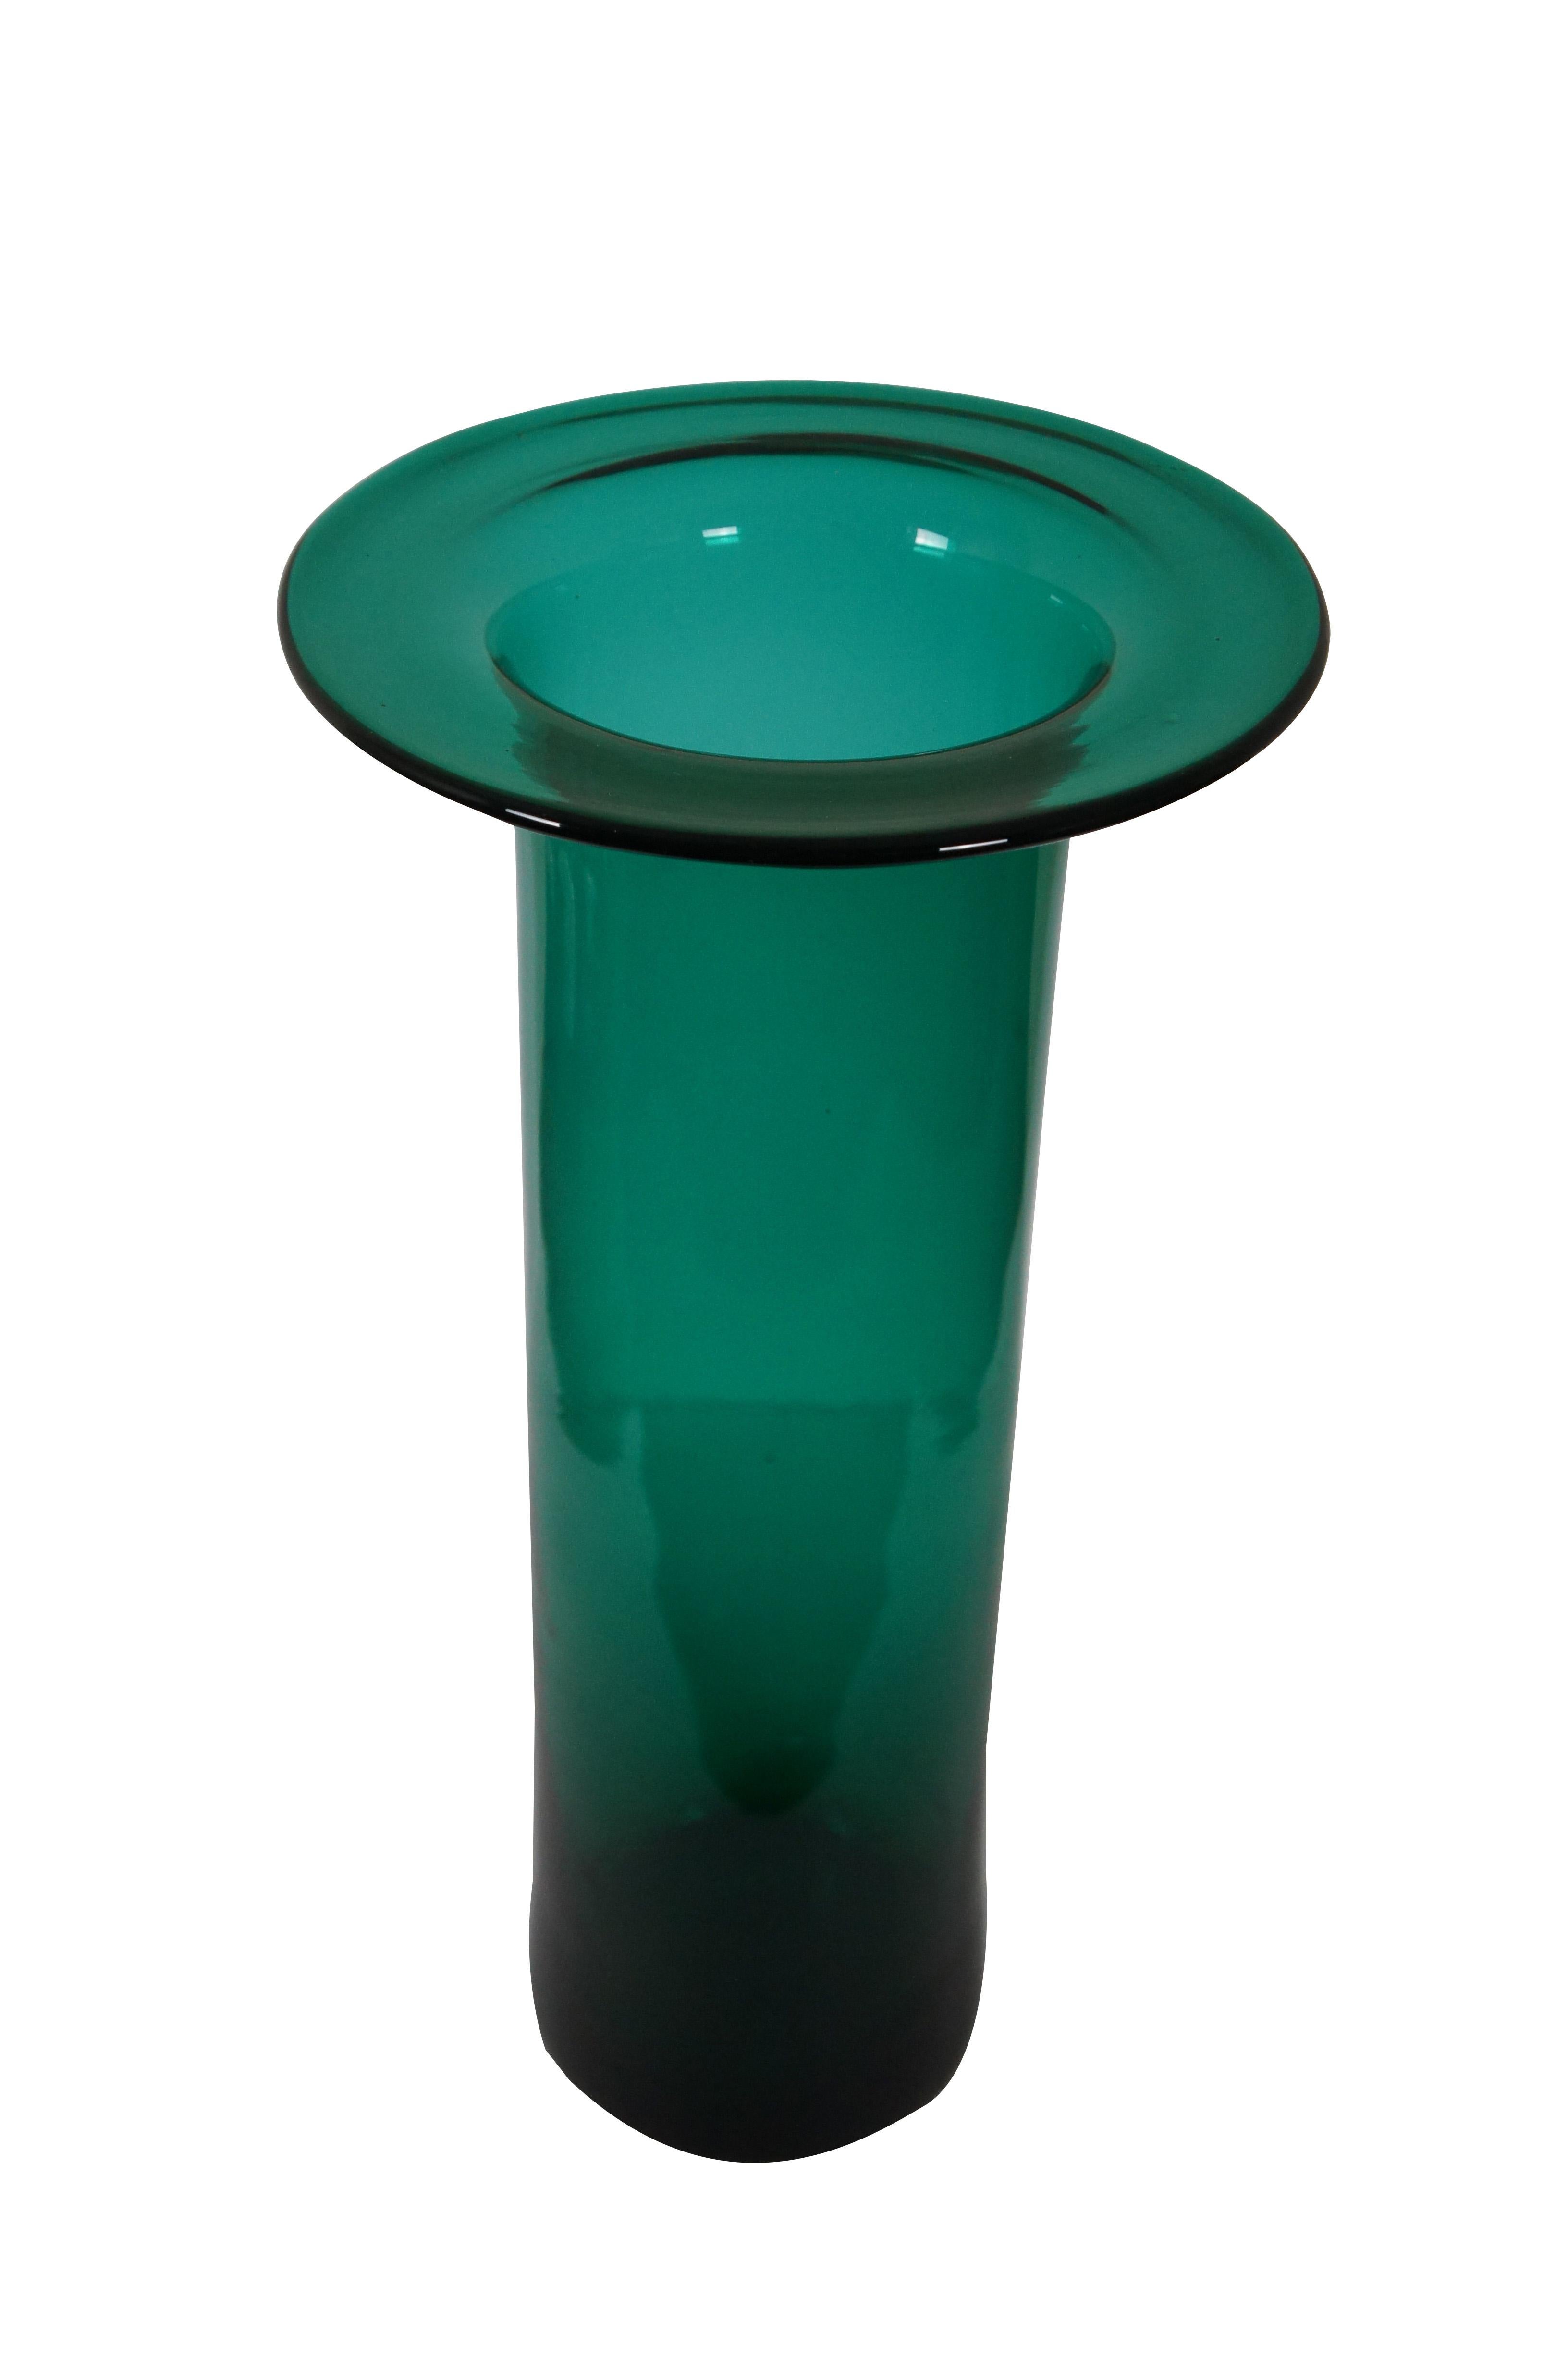 Große mundgeblasene smaragdgrüne / blaugrüne Glasvase von Blenko aus der Mitte des Jahrhunderts (1960er Jahre) in hoher zylindrischer Form mit geräuchertem Boden und flachem, scheibenförmigem Rand.

Abmessungen:
10